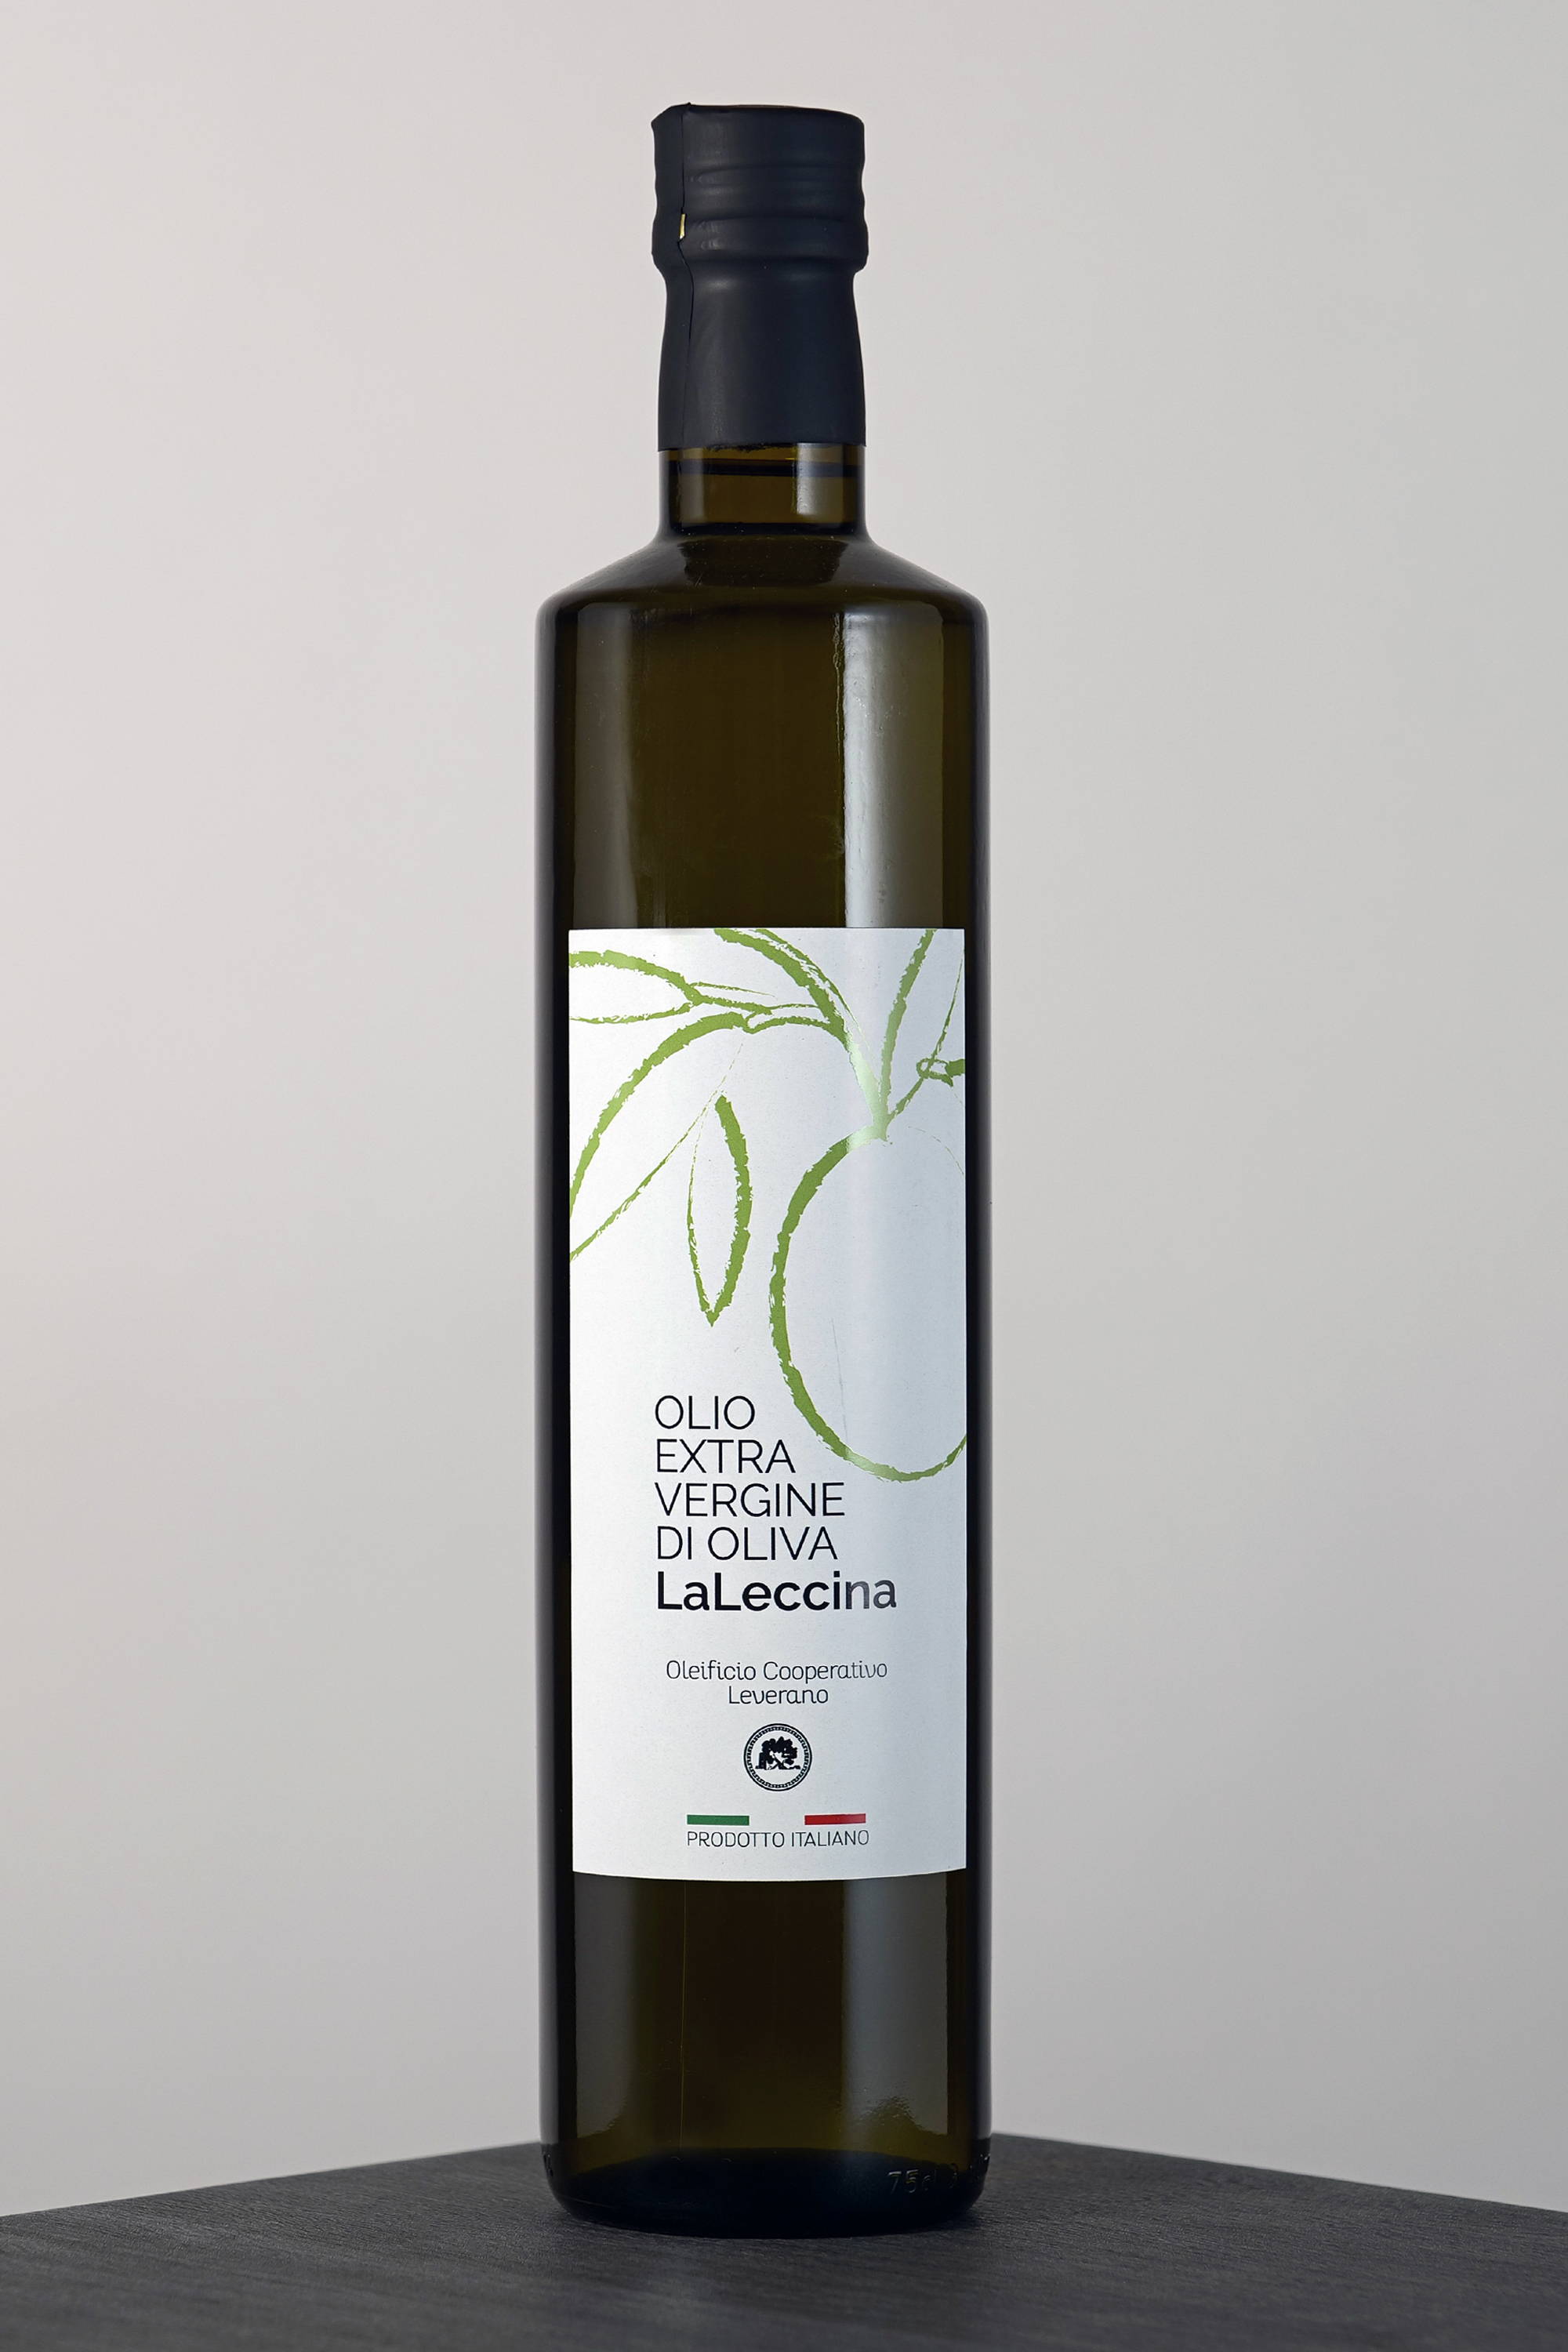 Extra virgin olive oil "LaLeccina" - lt. 3,00